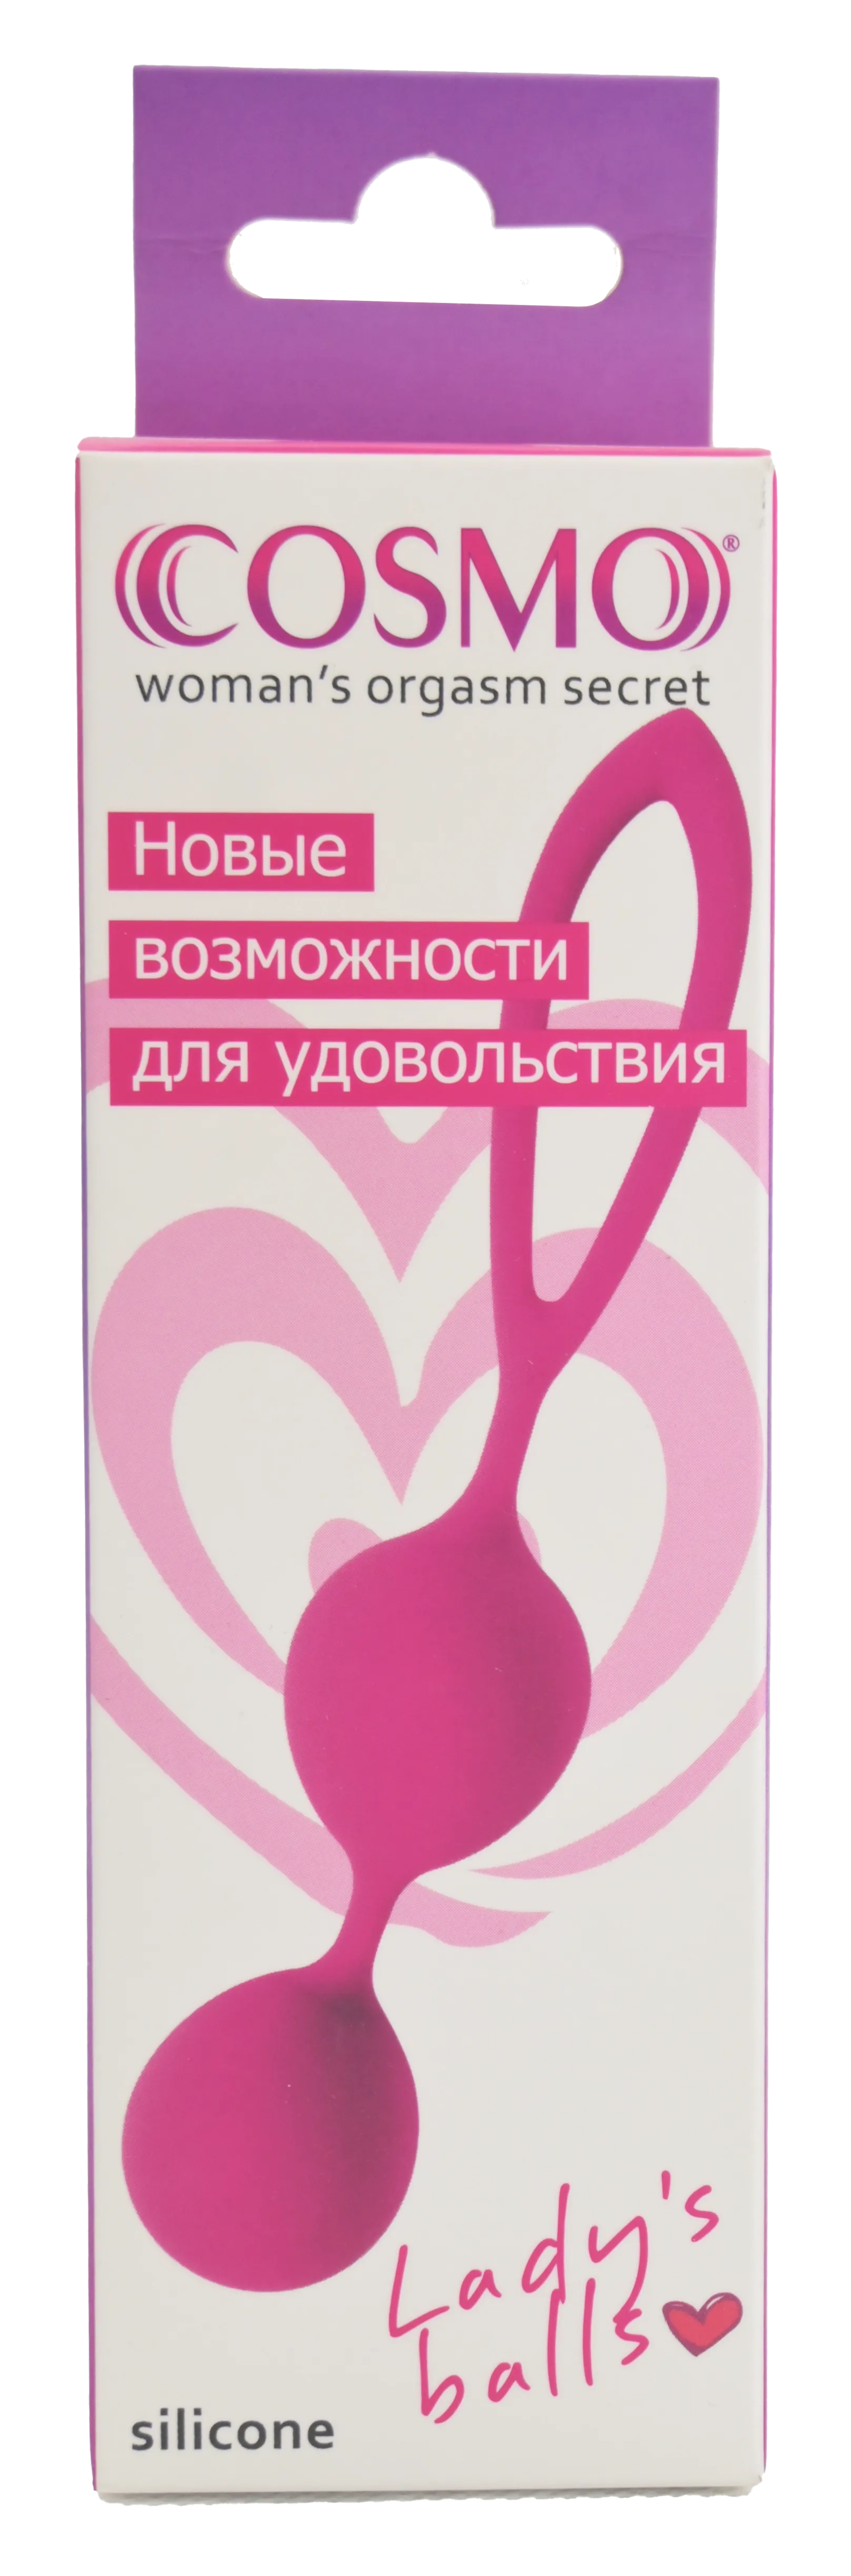 Упаковка интимных шариков Cosmo Silicone